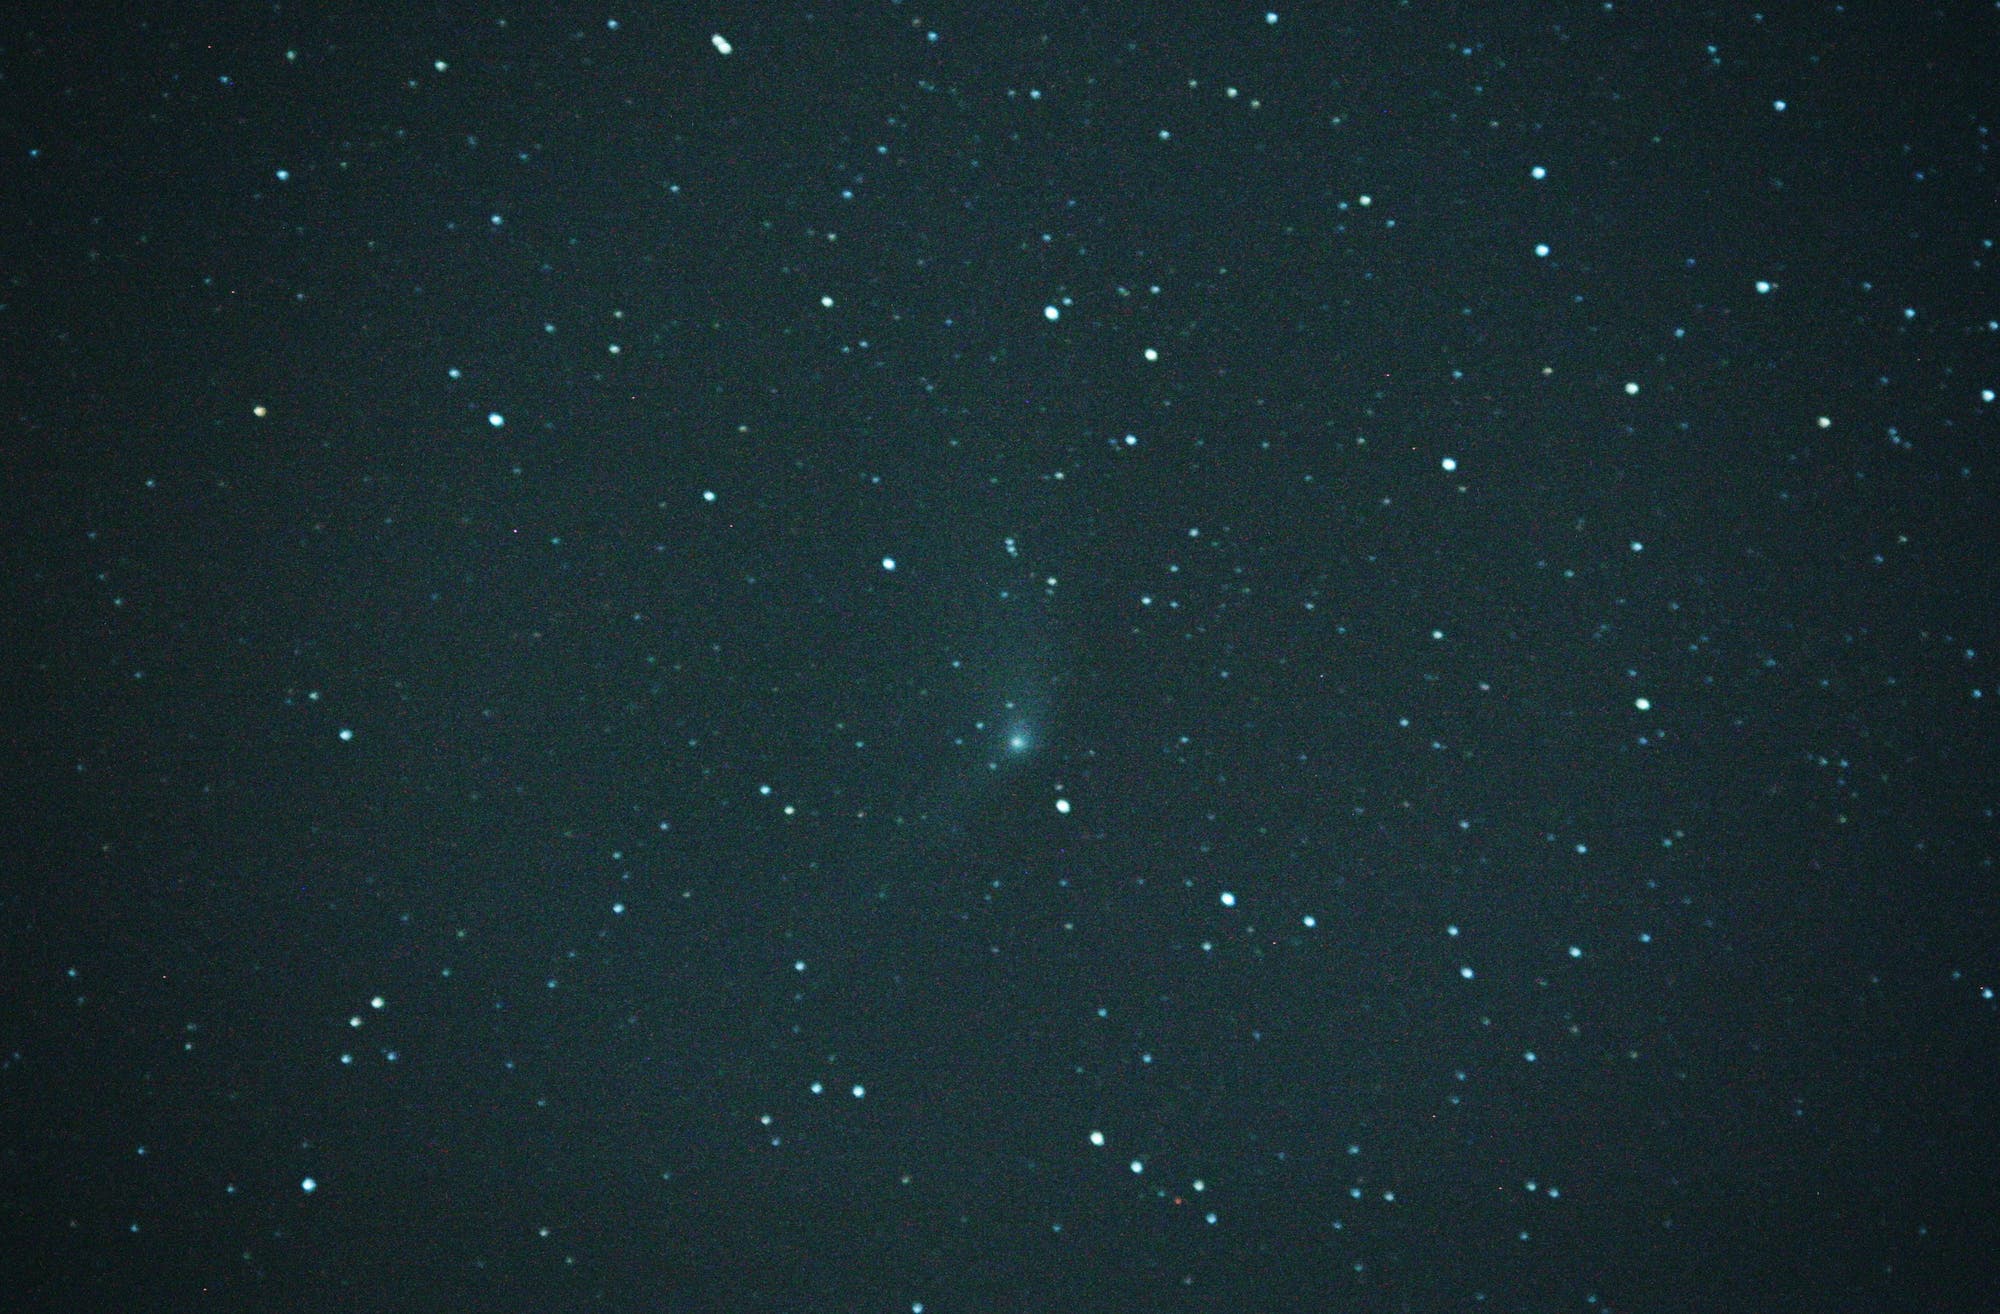 Komet PANSTARRS C/2011 L4